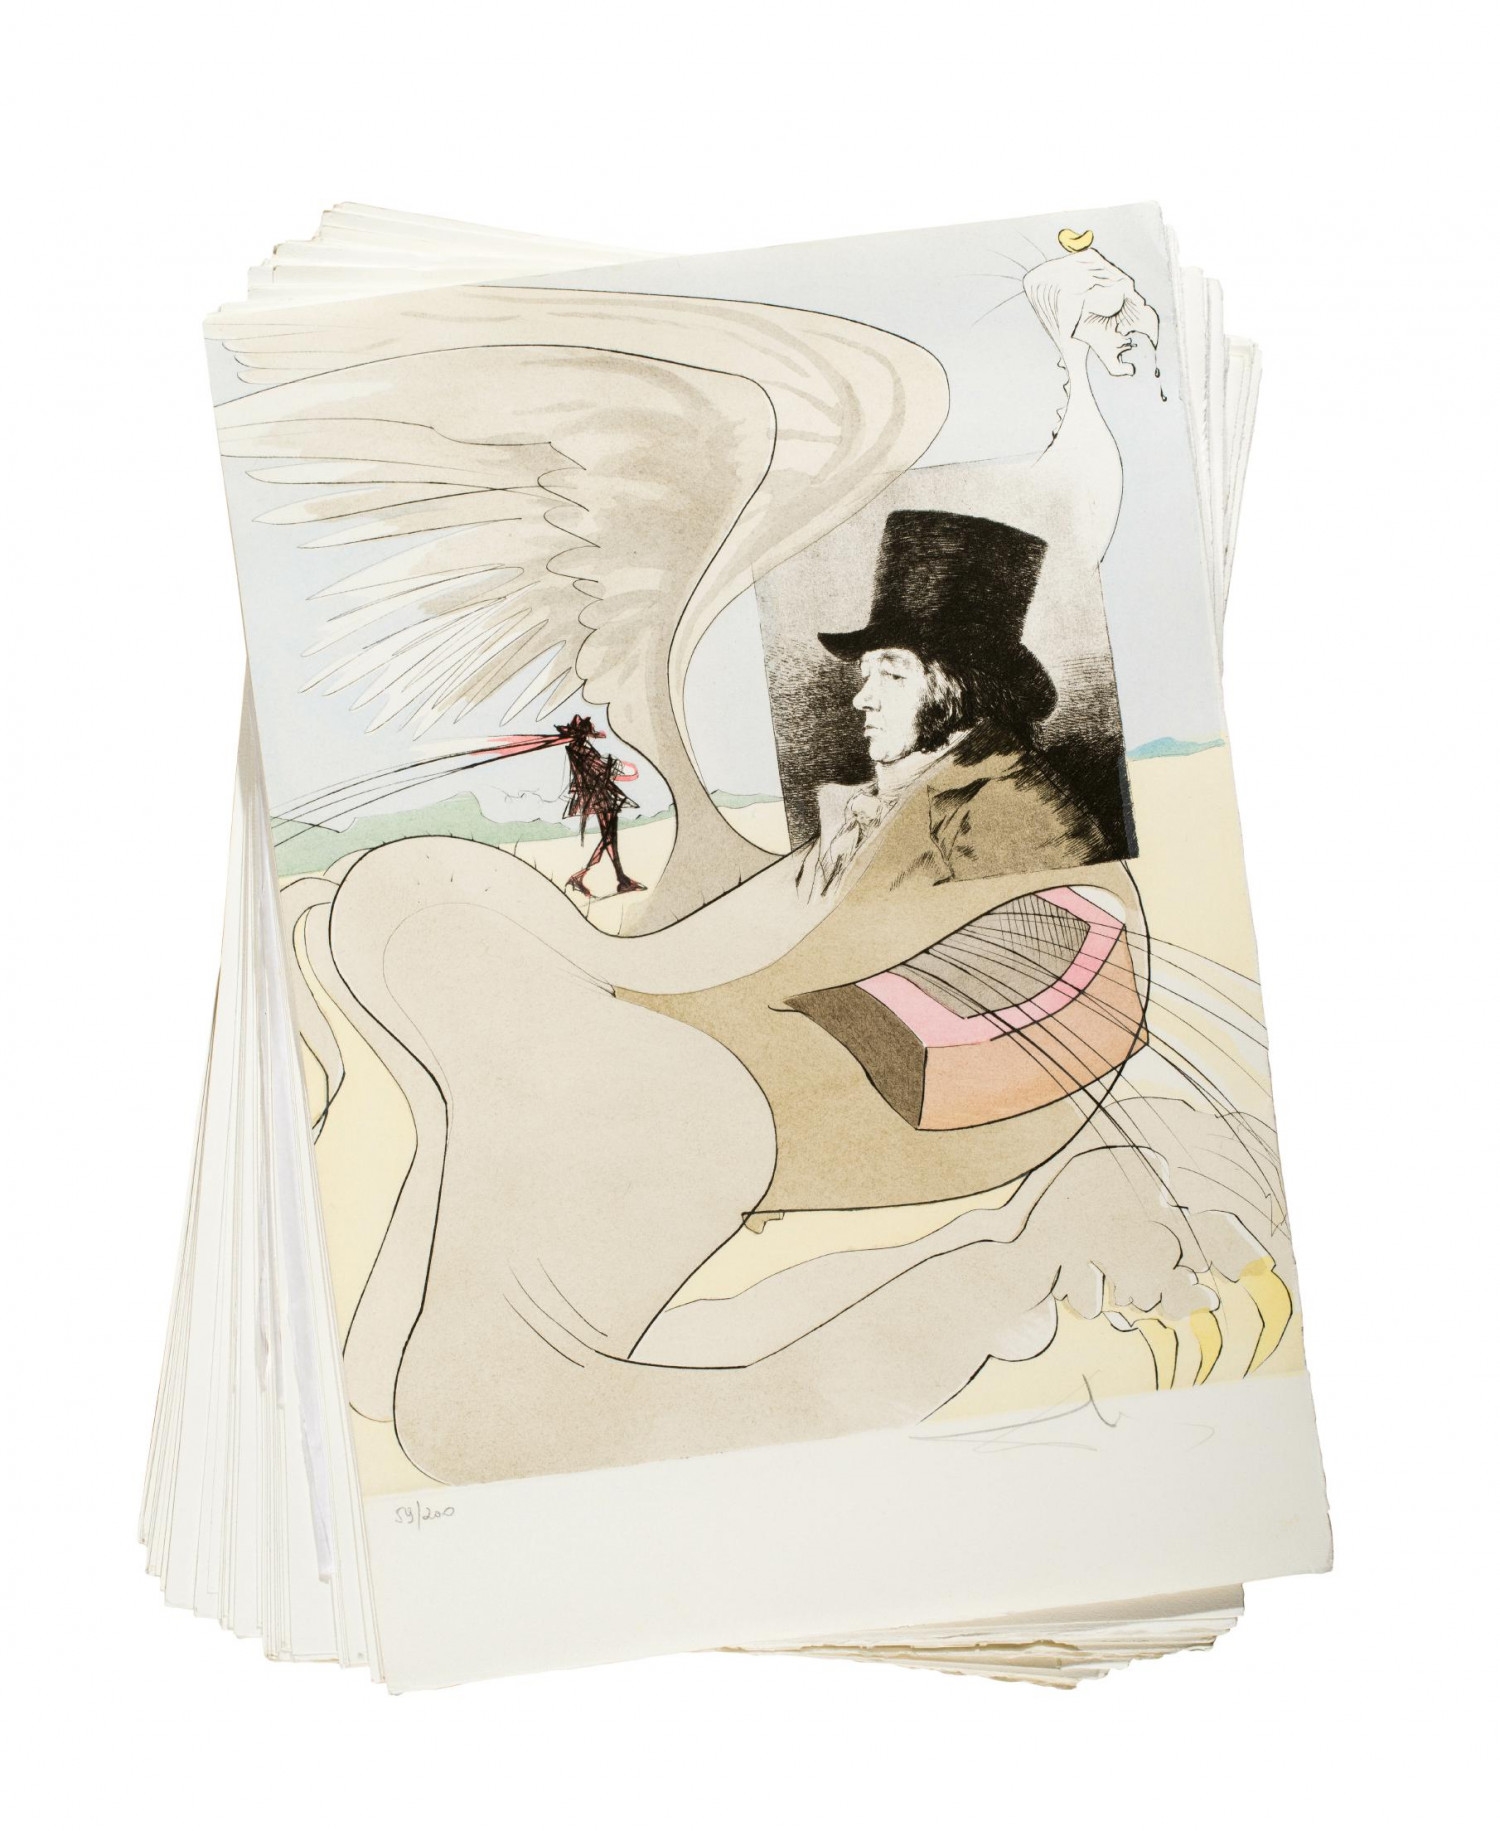 80 works, Les caprices de Goya de Dalí by Salvador Dalí, 1977